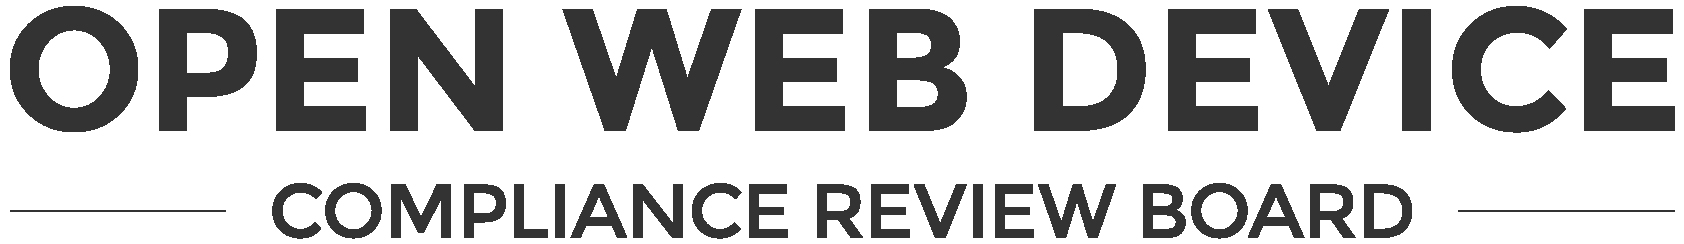 OWD-compliance-review-board wordmark